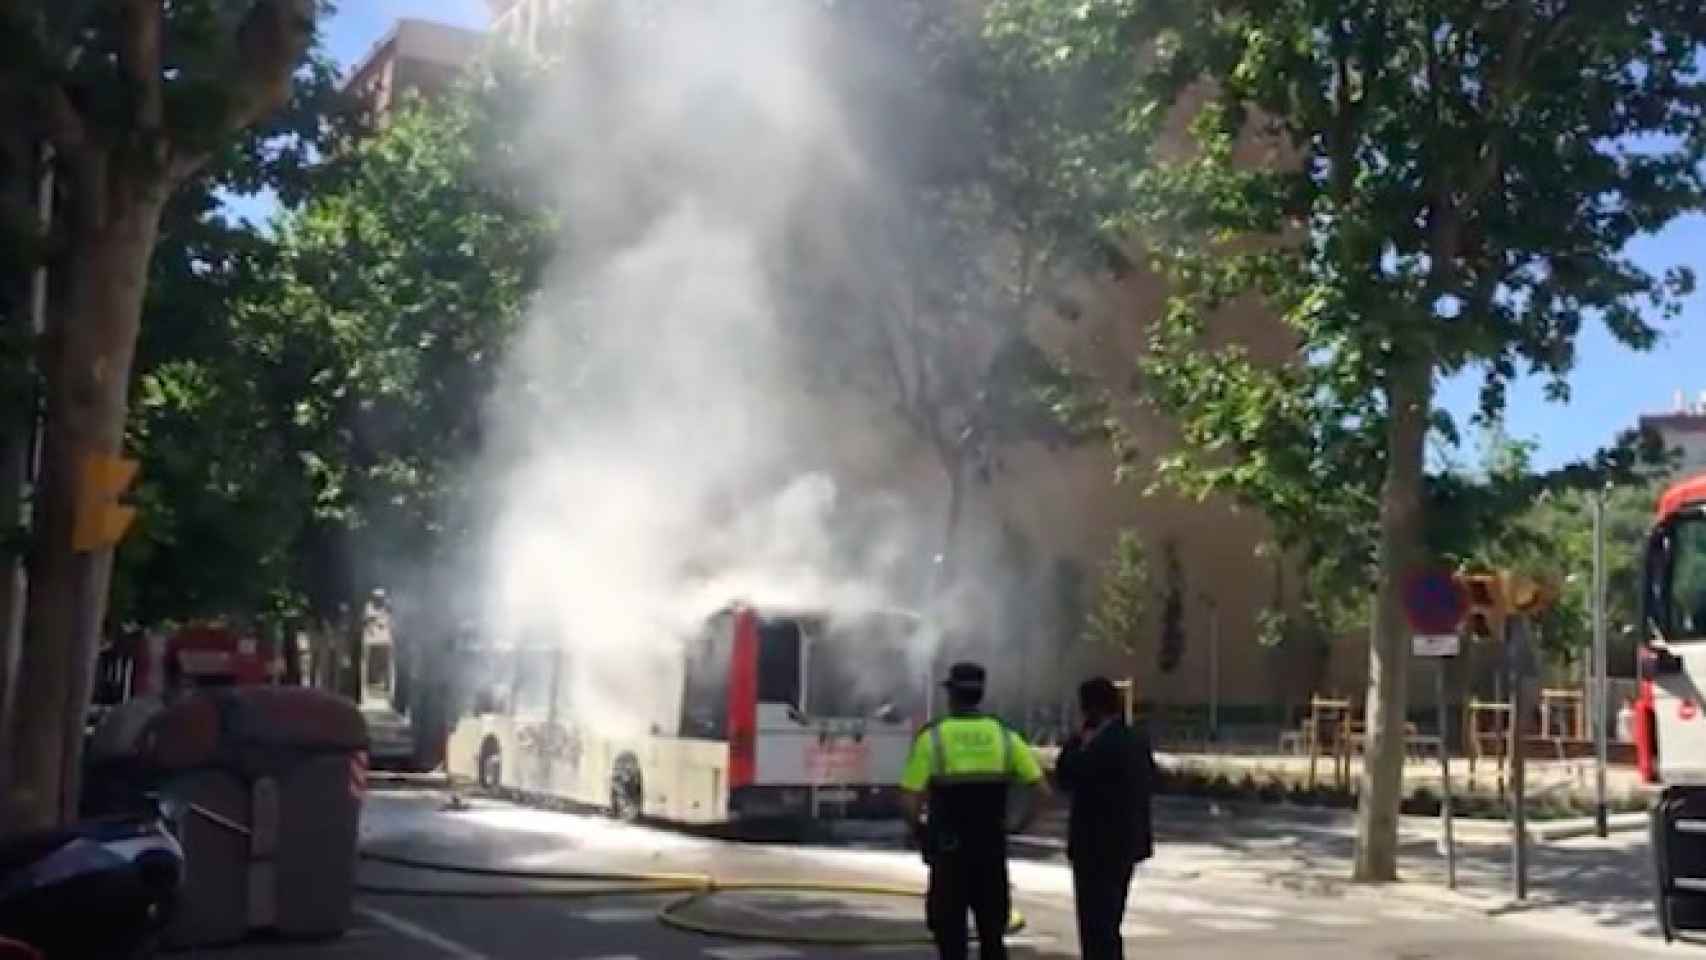 Los bomberos apagan el incendio en el autobús en la calle Lepant de Barcelona / CG